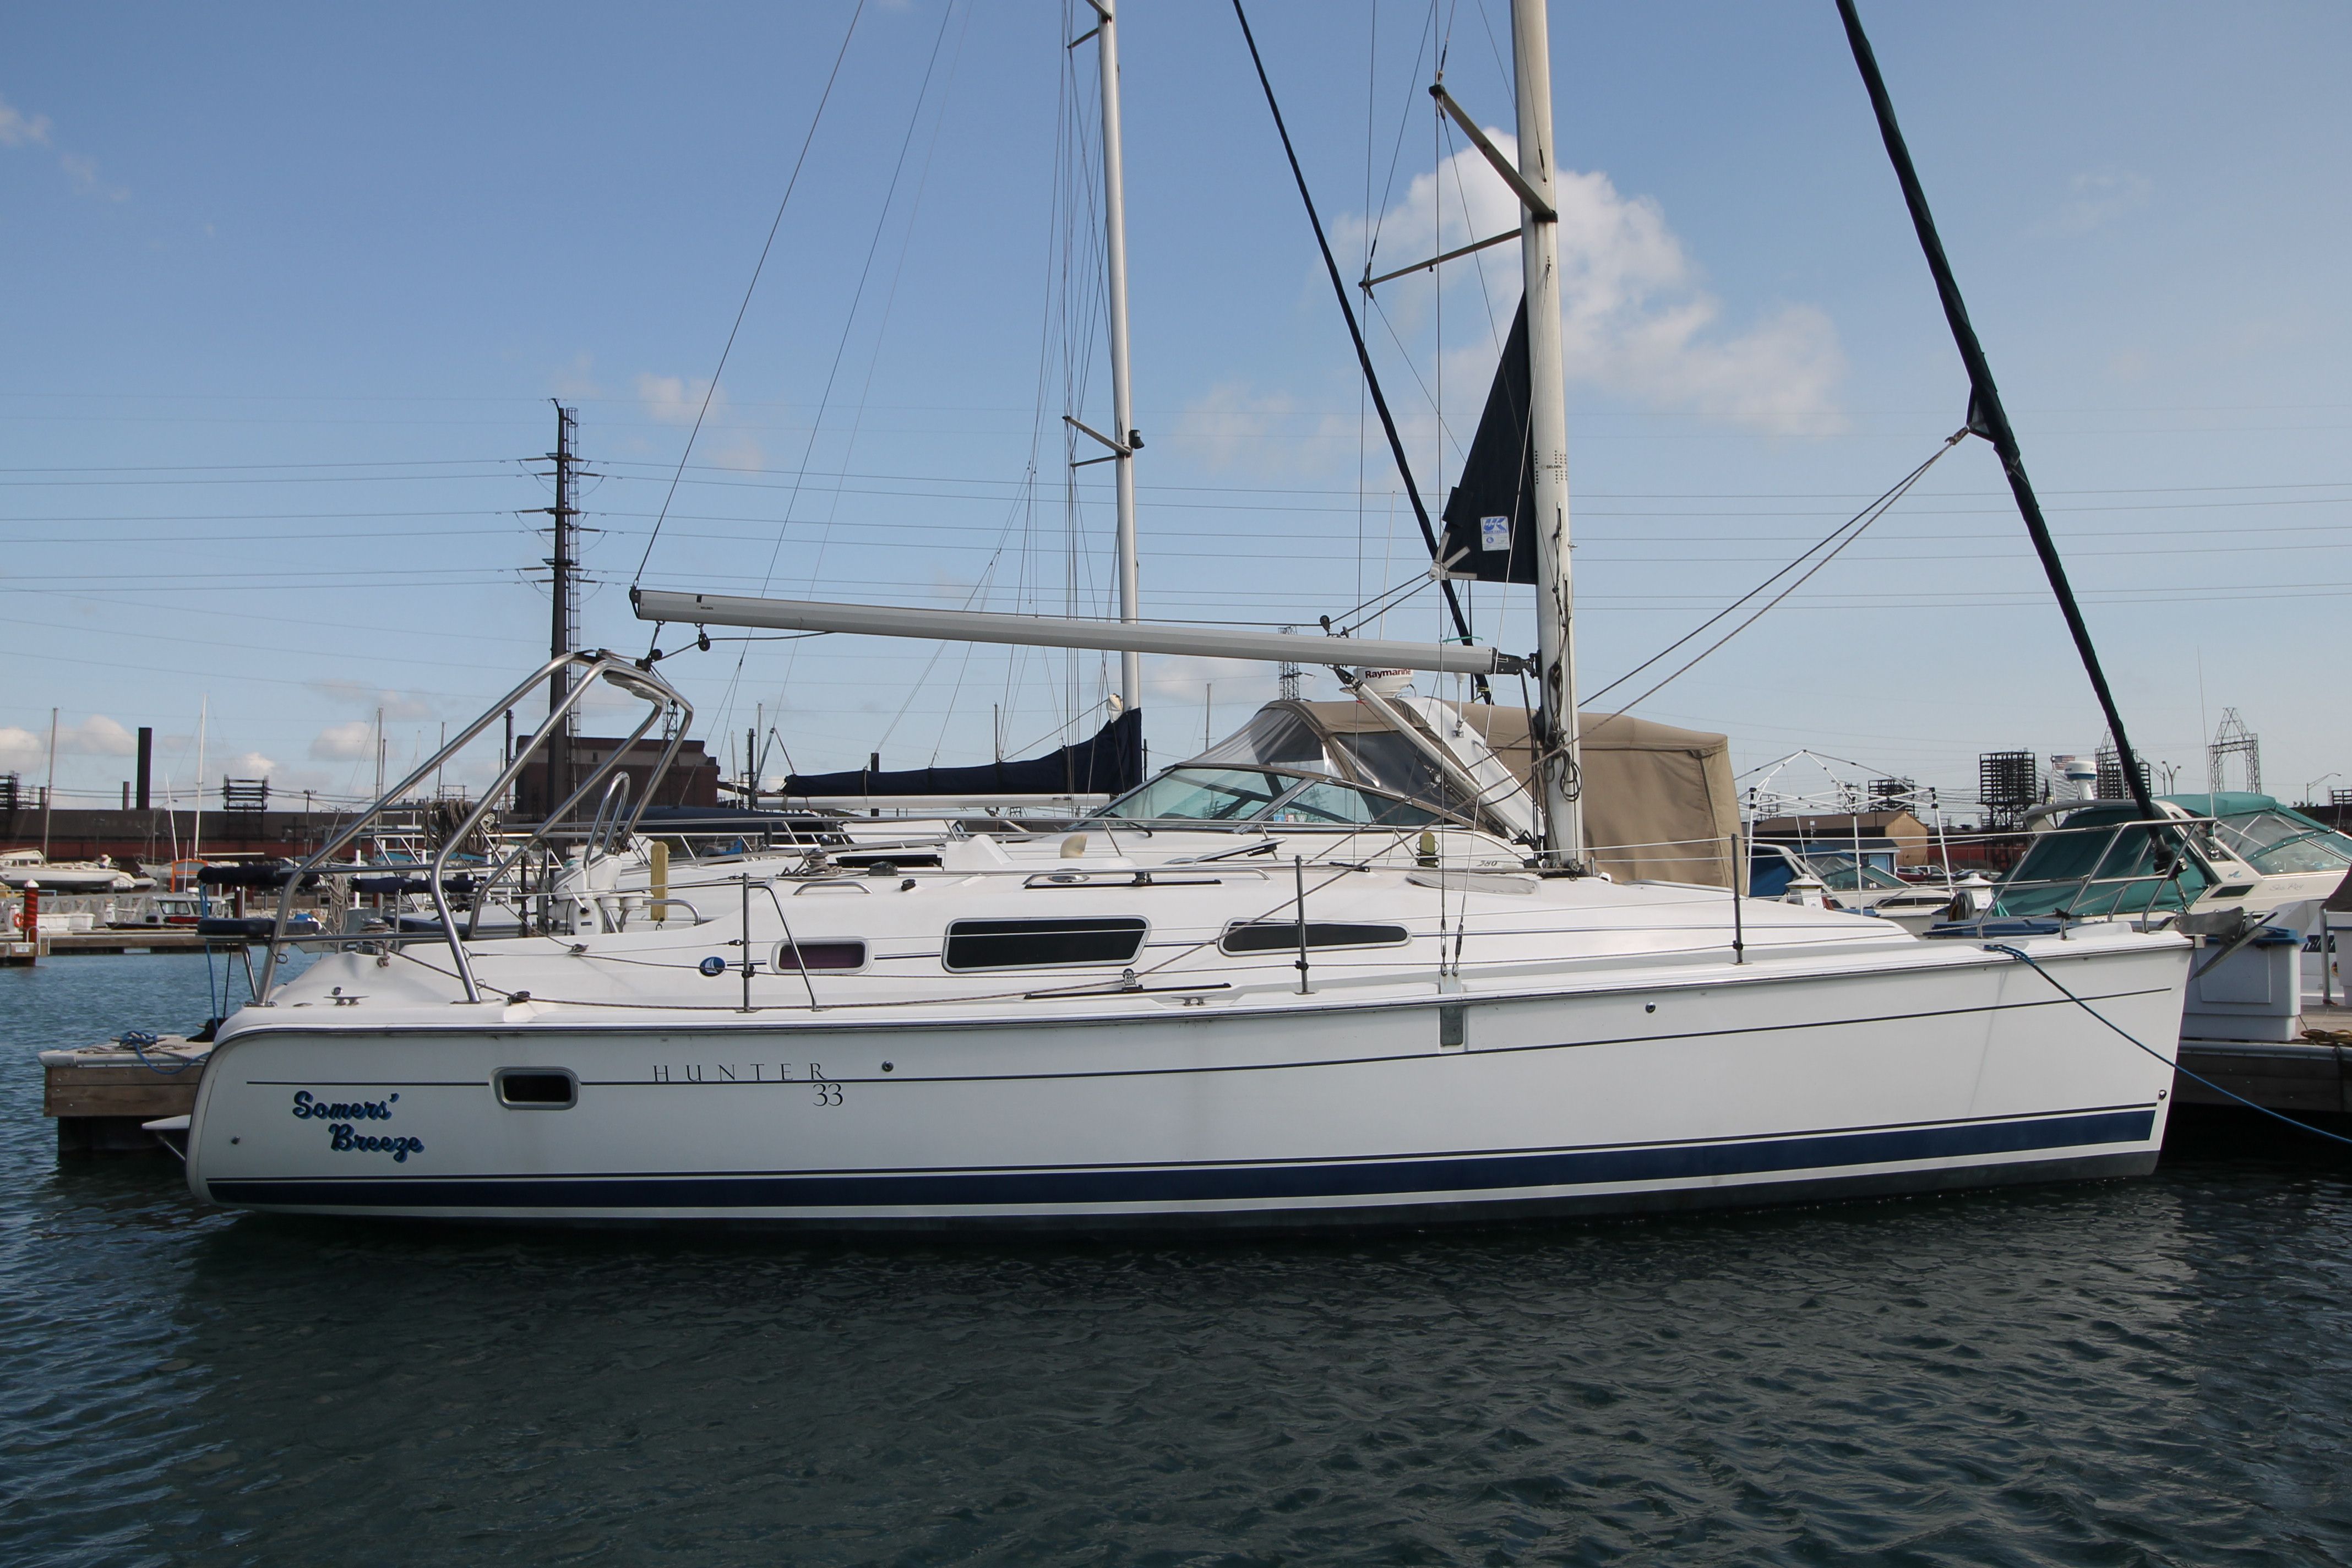 33 ft hunter sailboat for sale